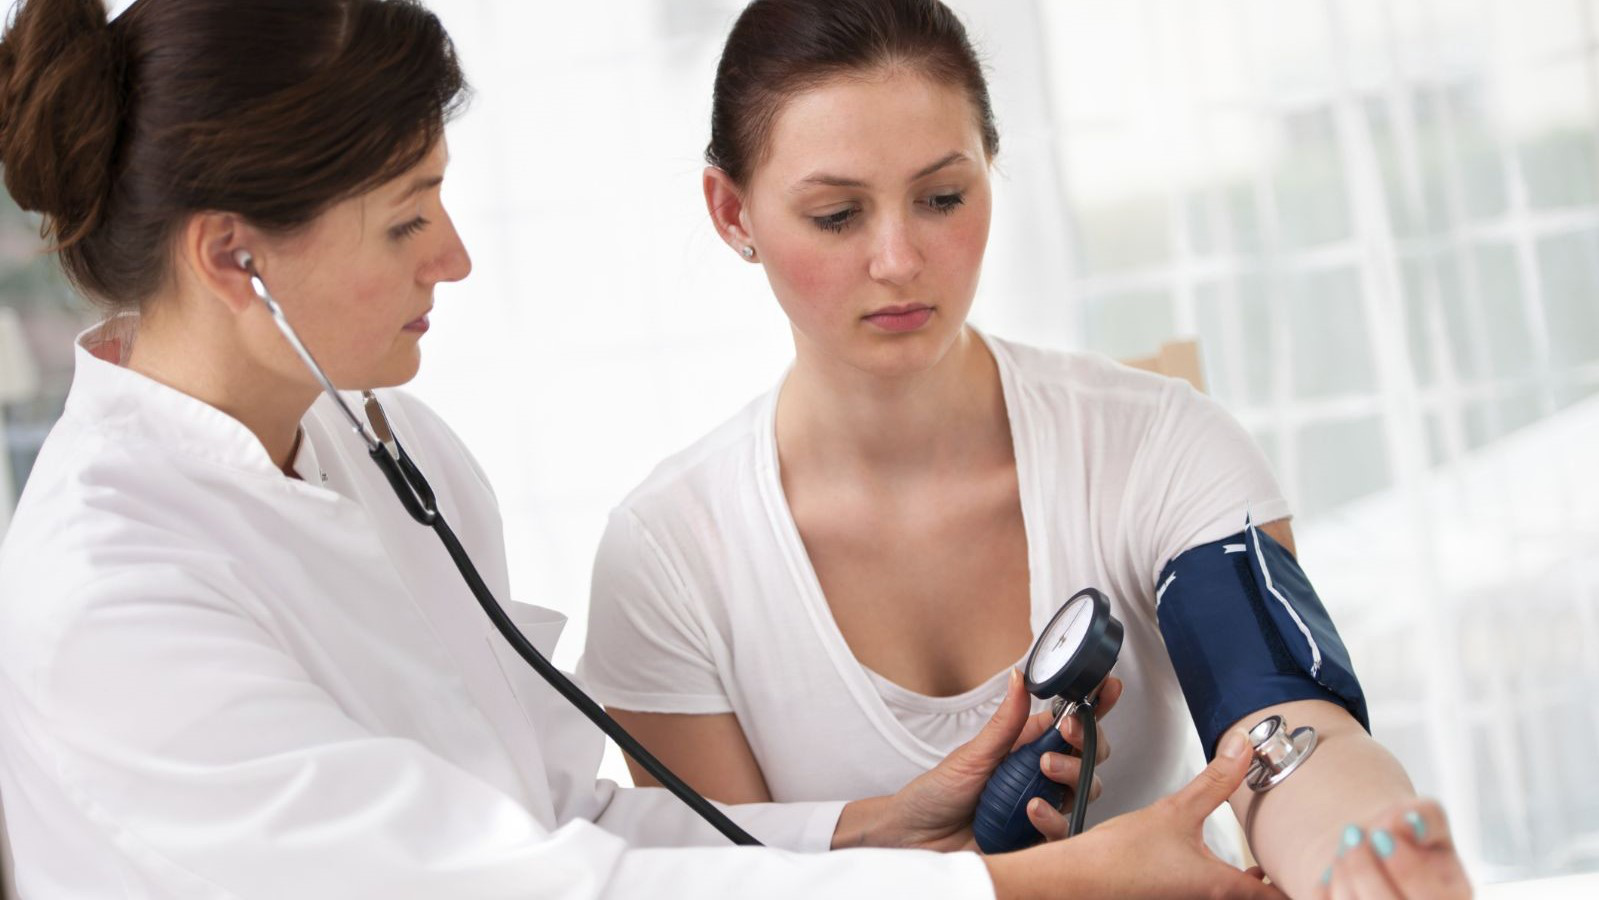 Có những thiết bị đo huyết áp nào và cách sử dụng chúng để đảm bảo kết quả chính xác?
